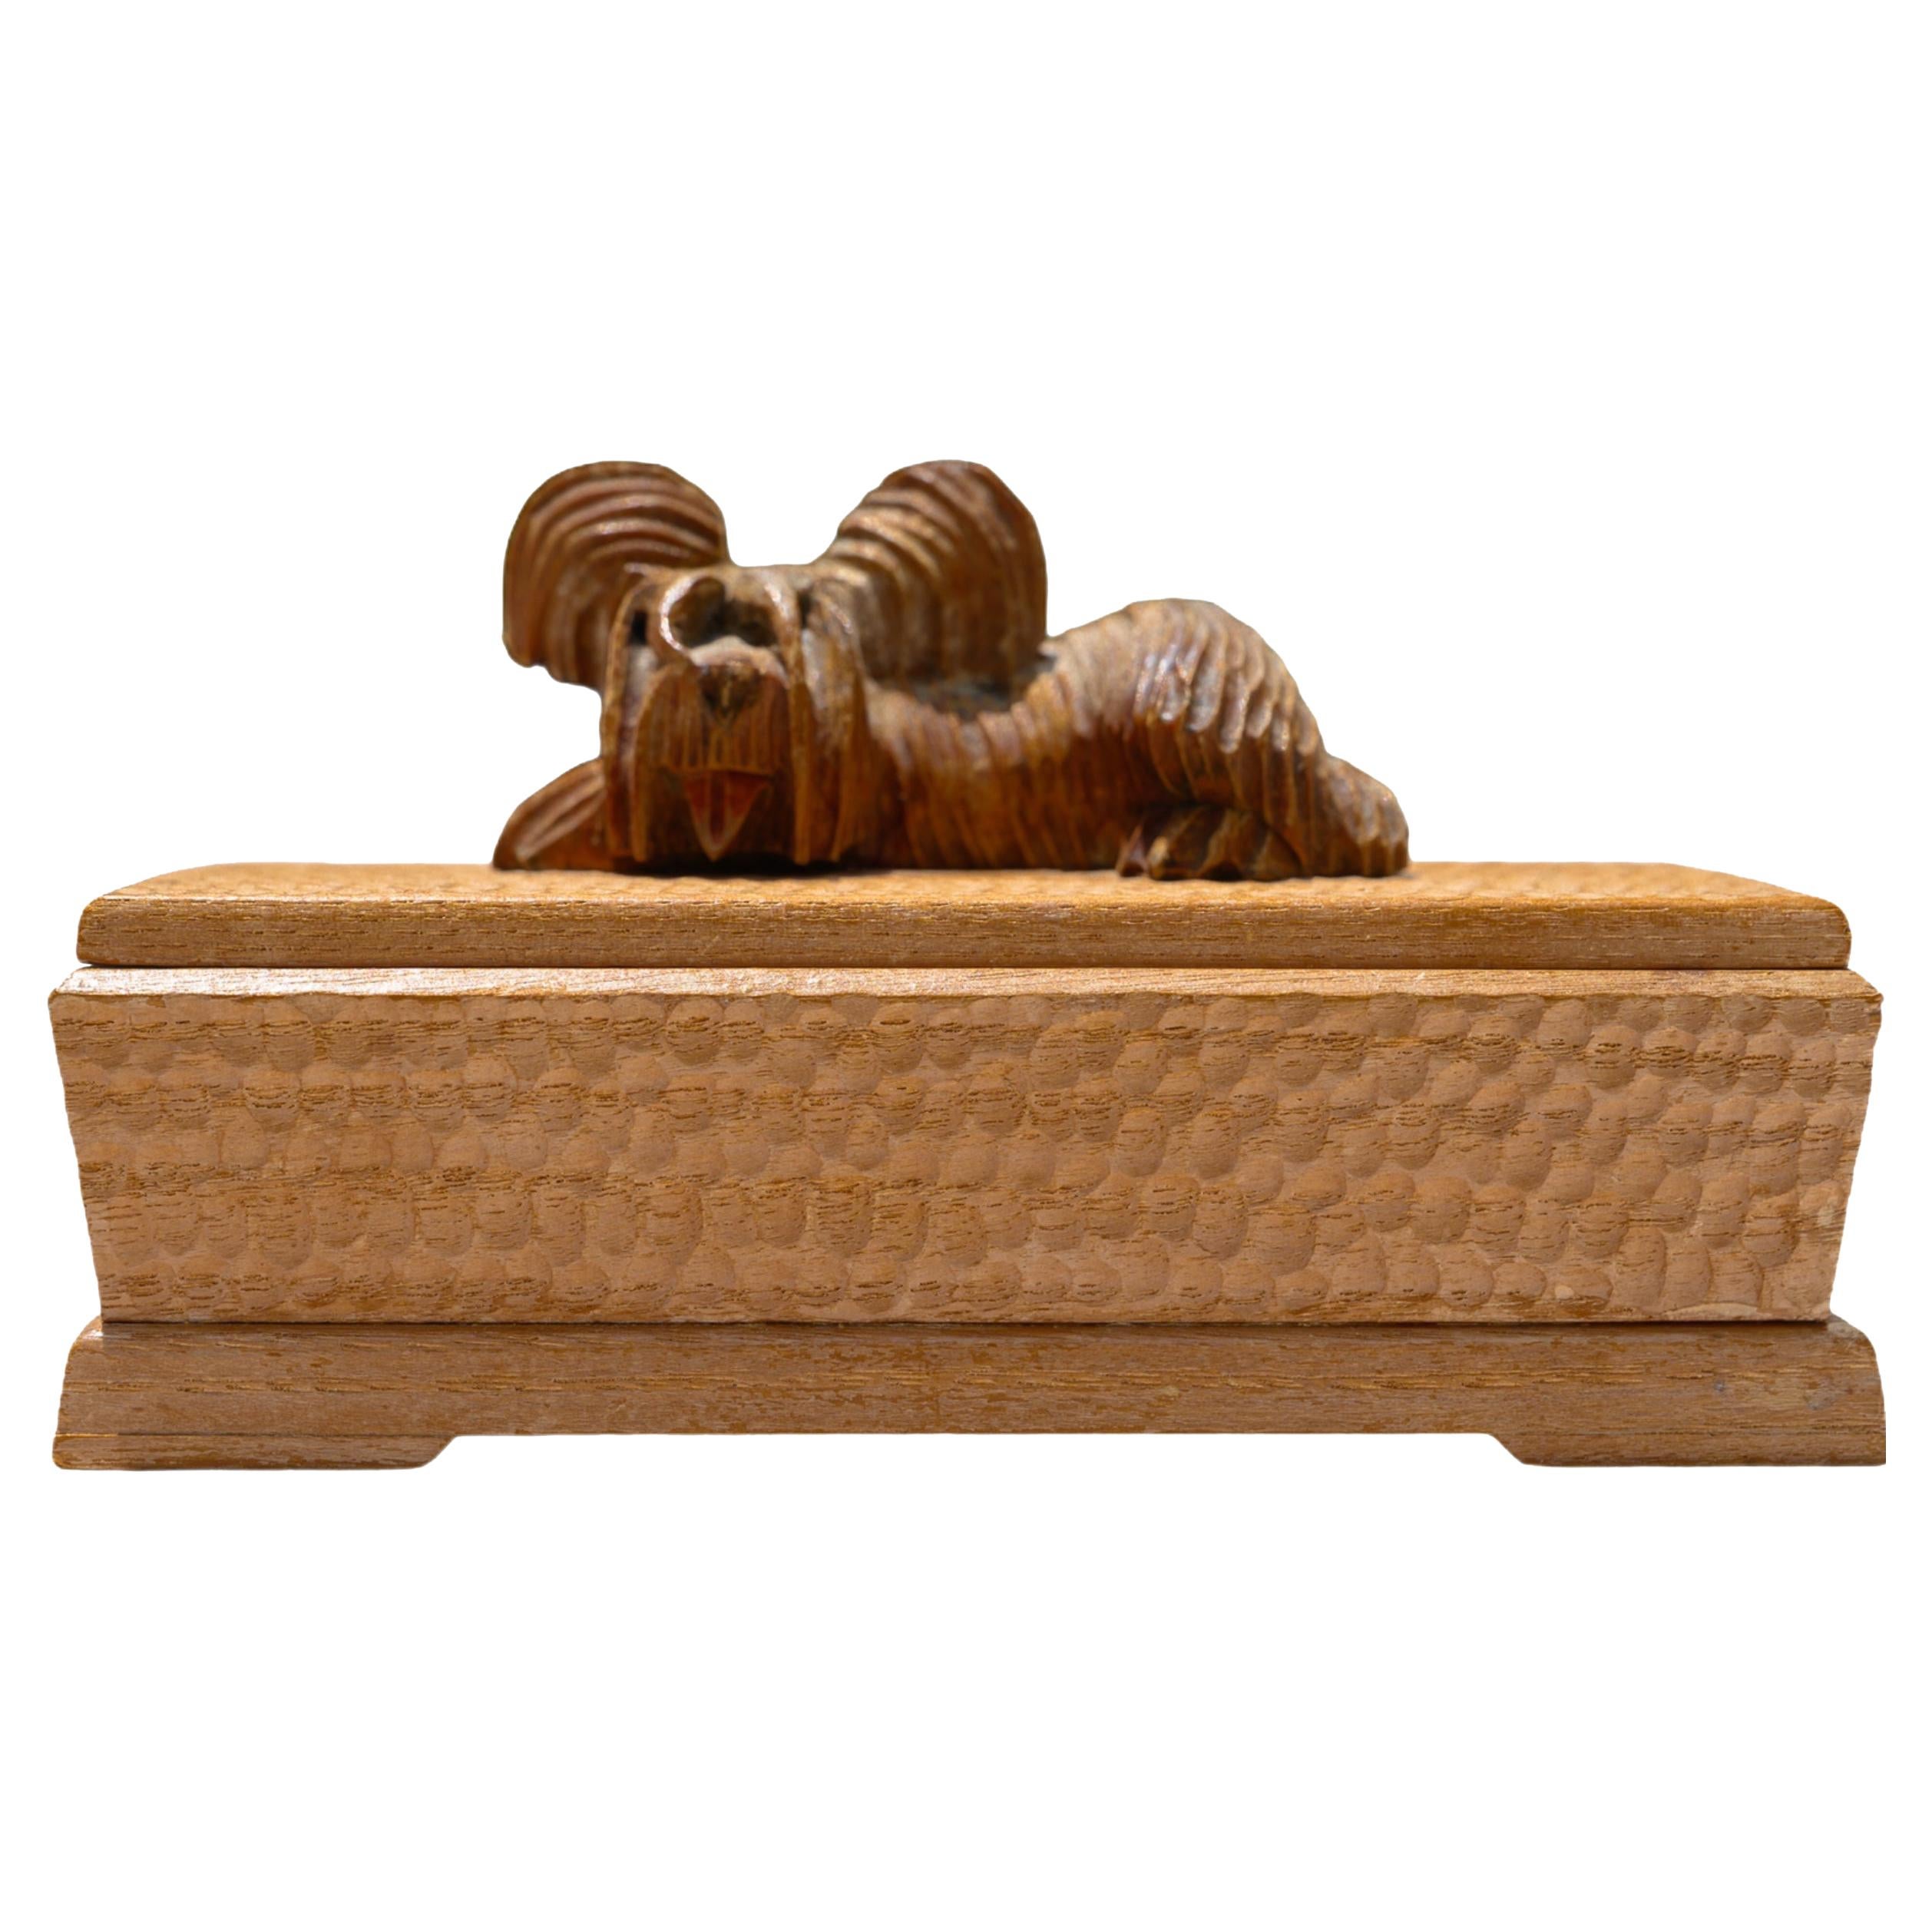 Handgeschnitzte dekorative Holzschachtel mit Tierskulptur und Deckel oben